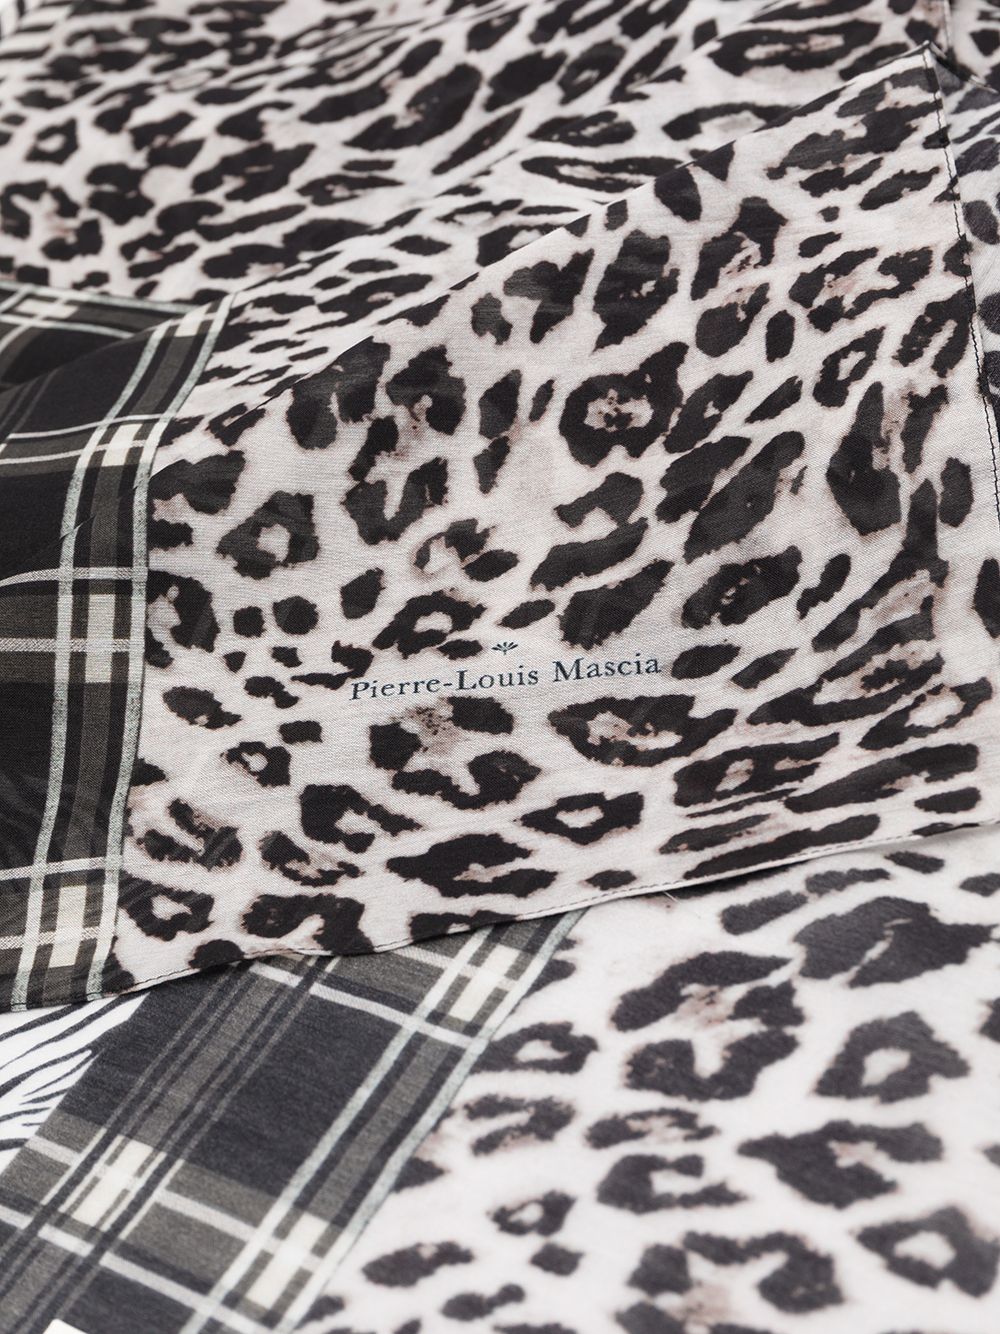 фото Pierre-louis mascia платок с леопардовым принтом